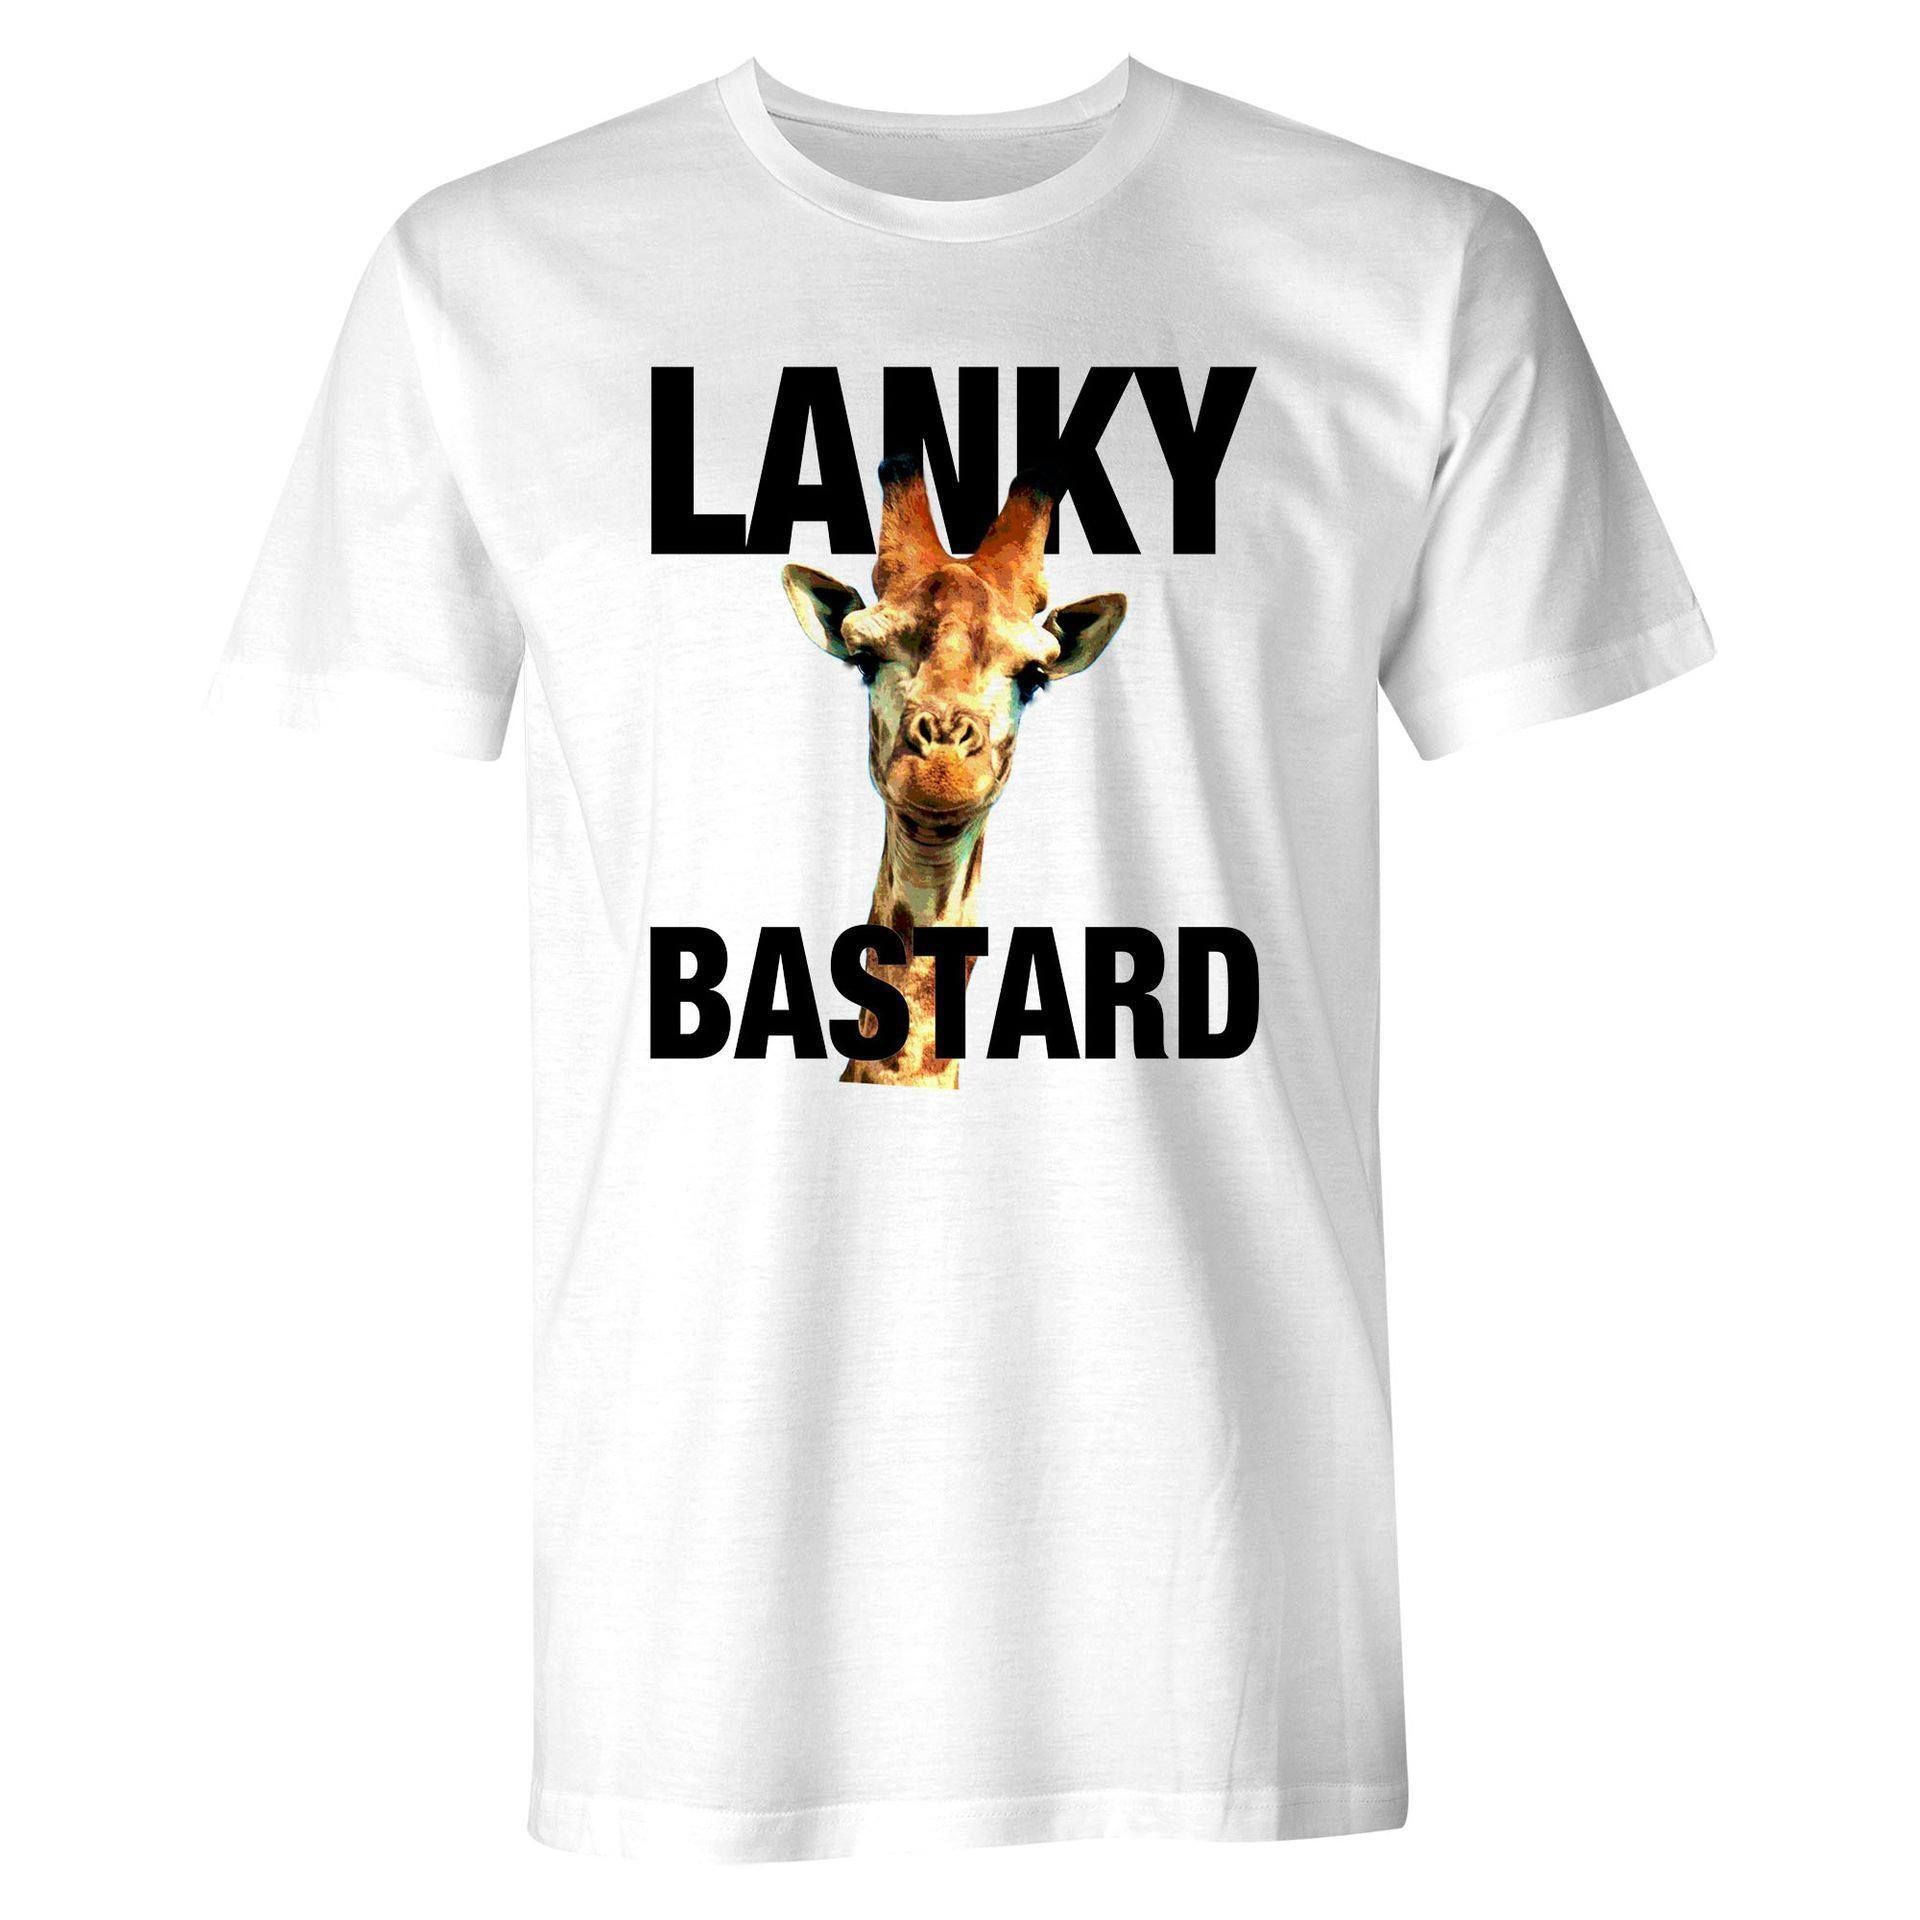 Lanky bastard - Giraffe